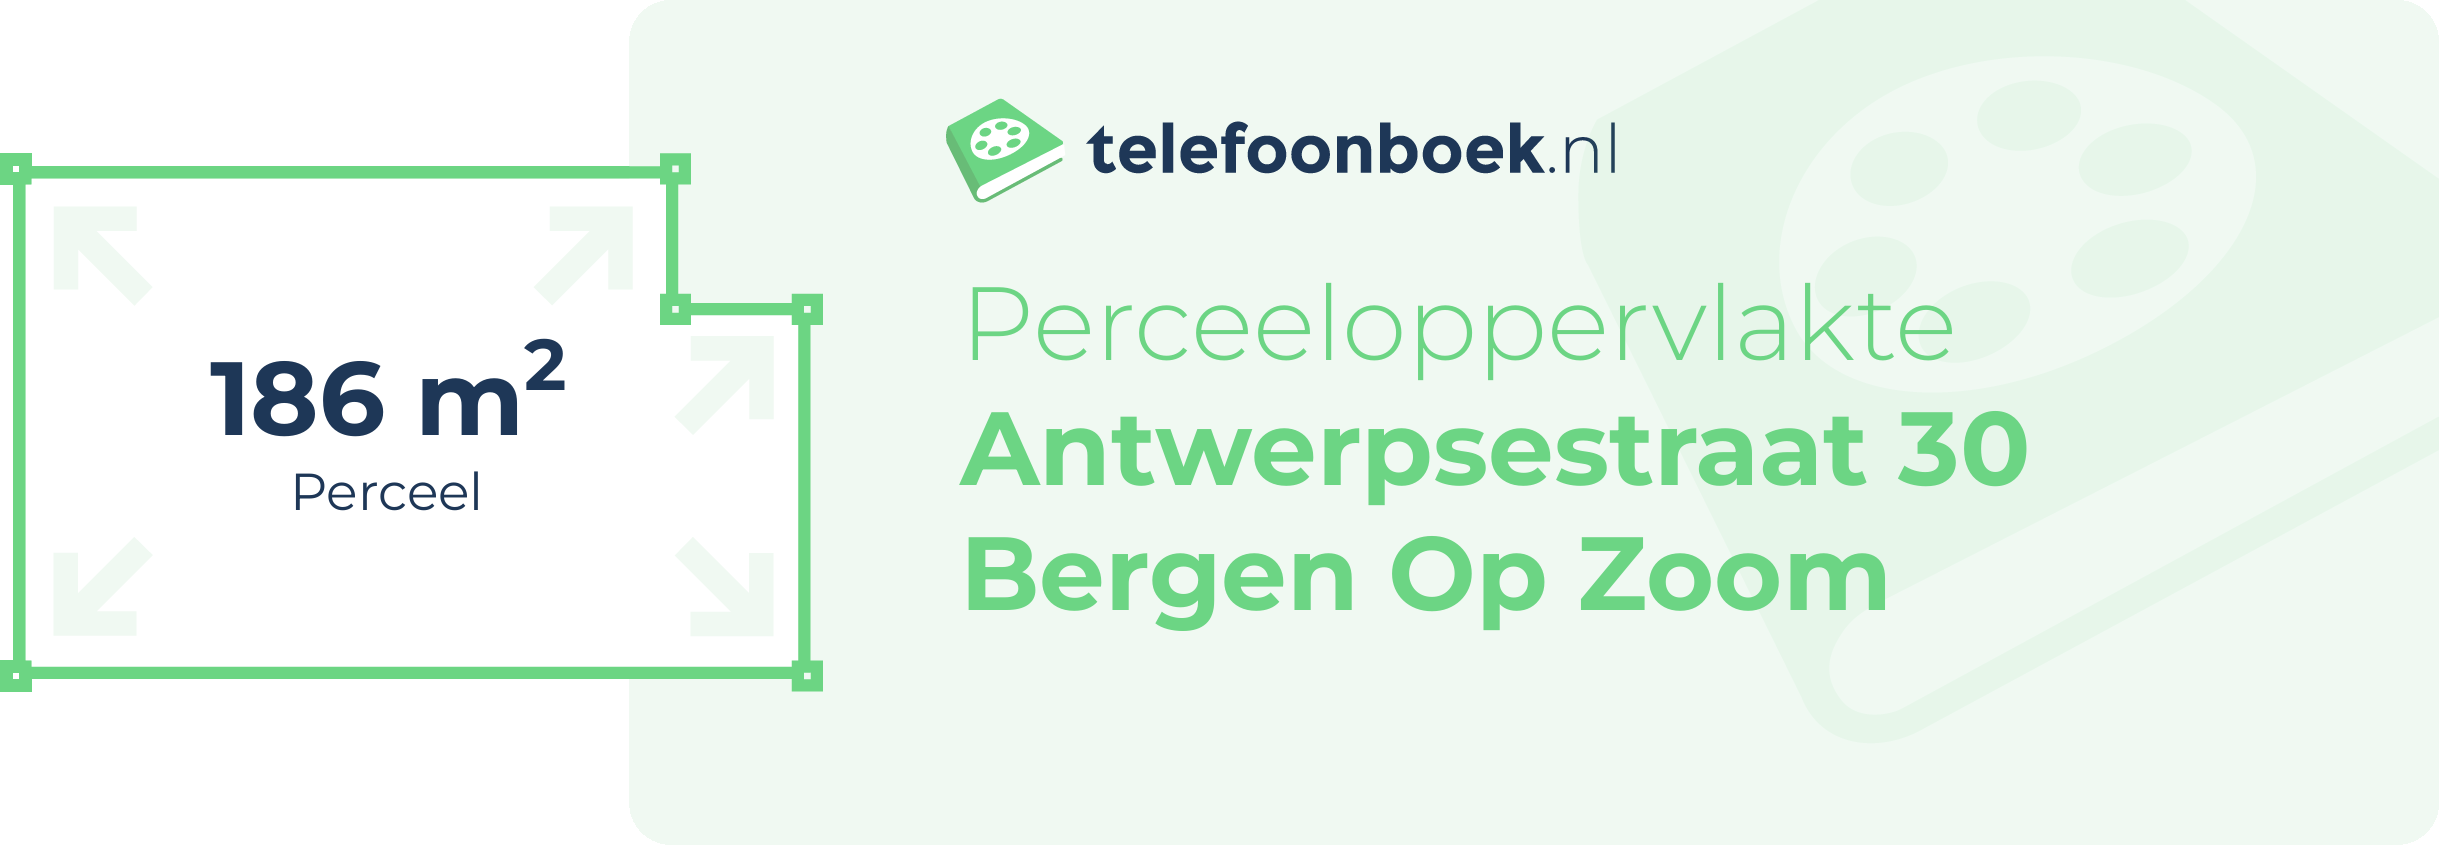 Perceeloppervlakte Antwerpsestraat 30 Bergen Op Zoom